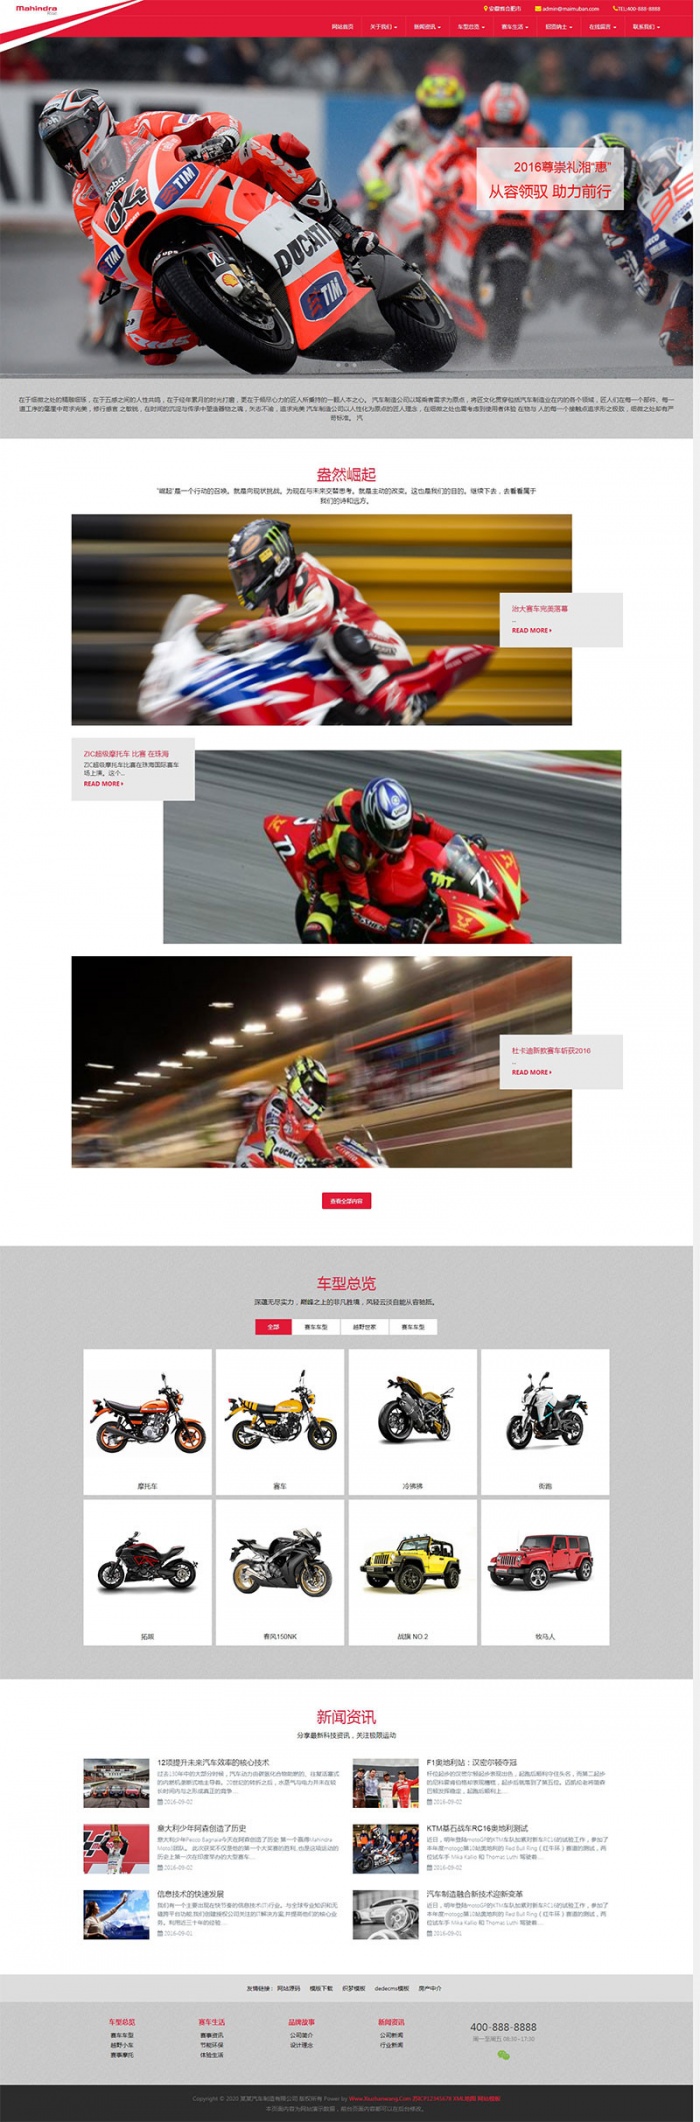 响应式摩托车汽车制造公司营销网站织梦模板源码